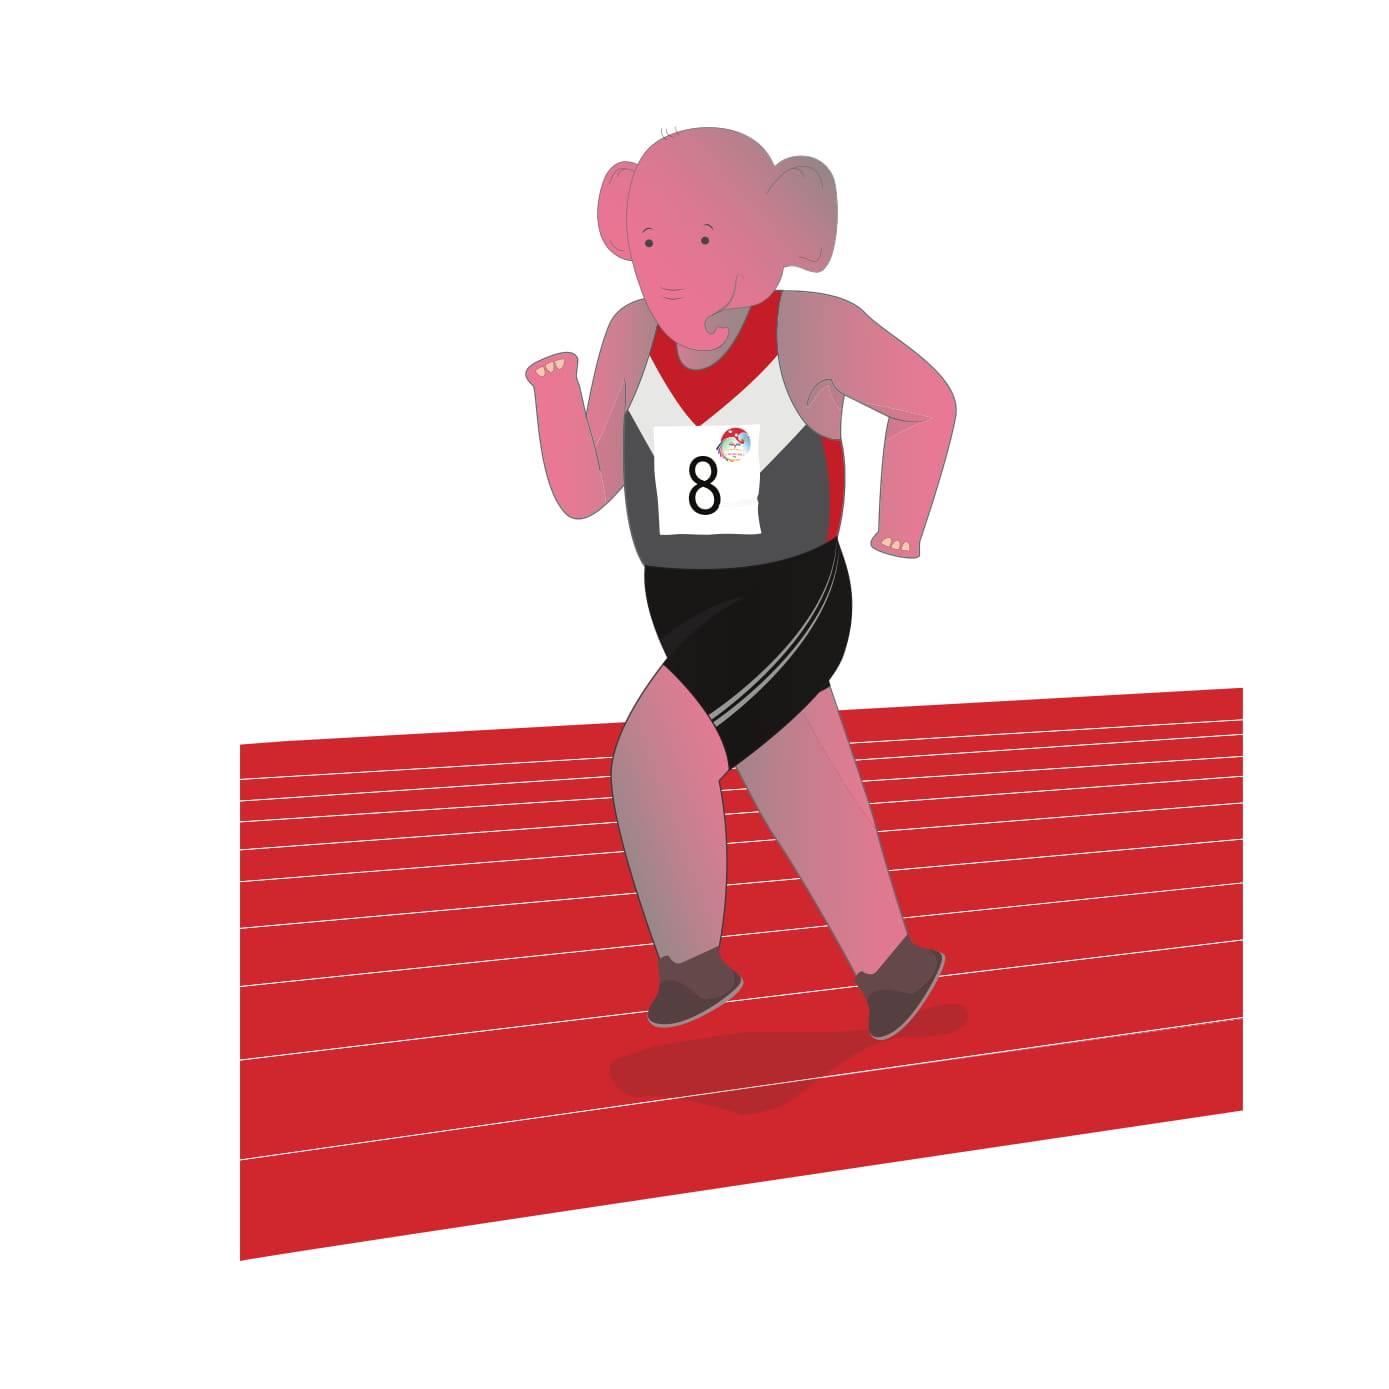 एथ्लेटिक्स : चार सय मिटर दौडमा नीर र तुलसीलाई स्वर्ण